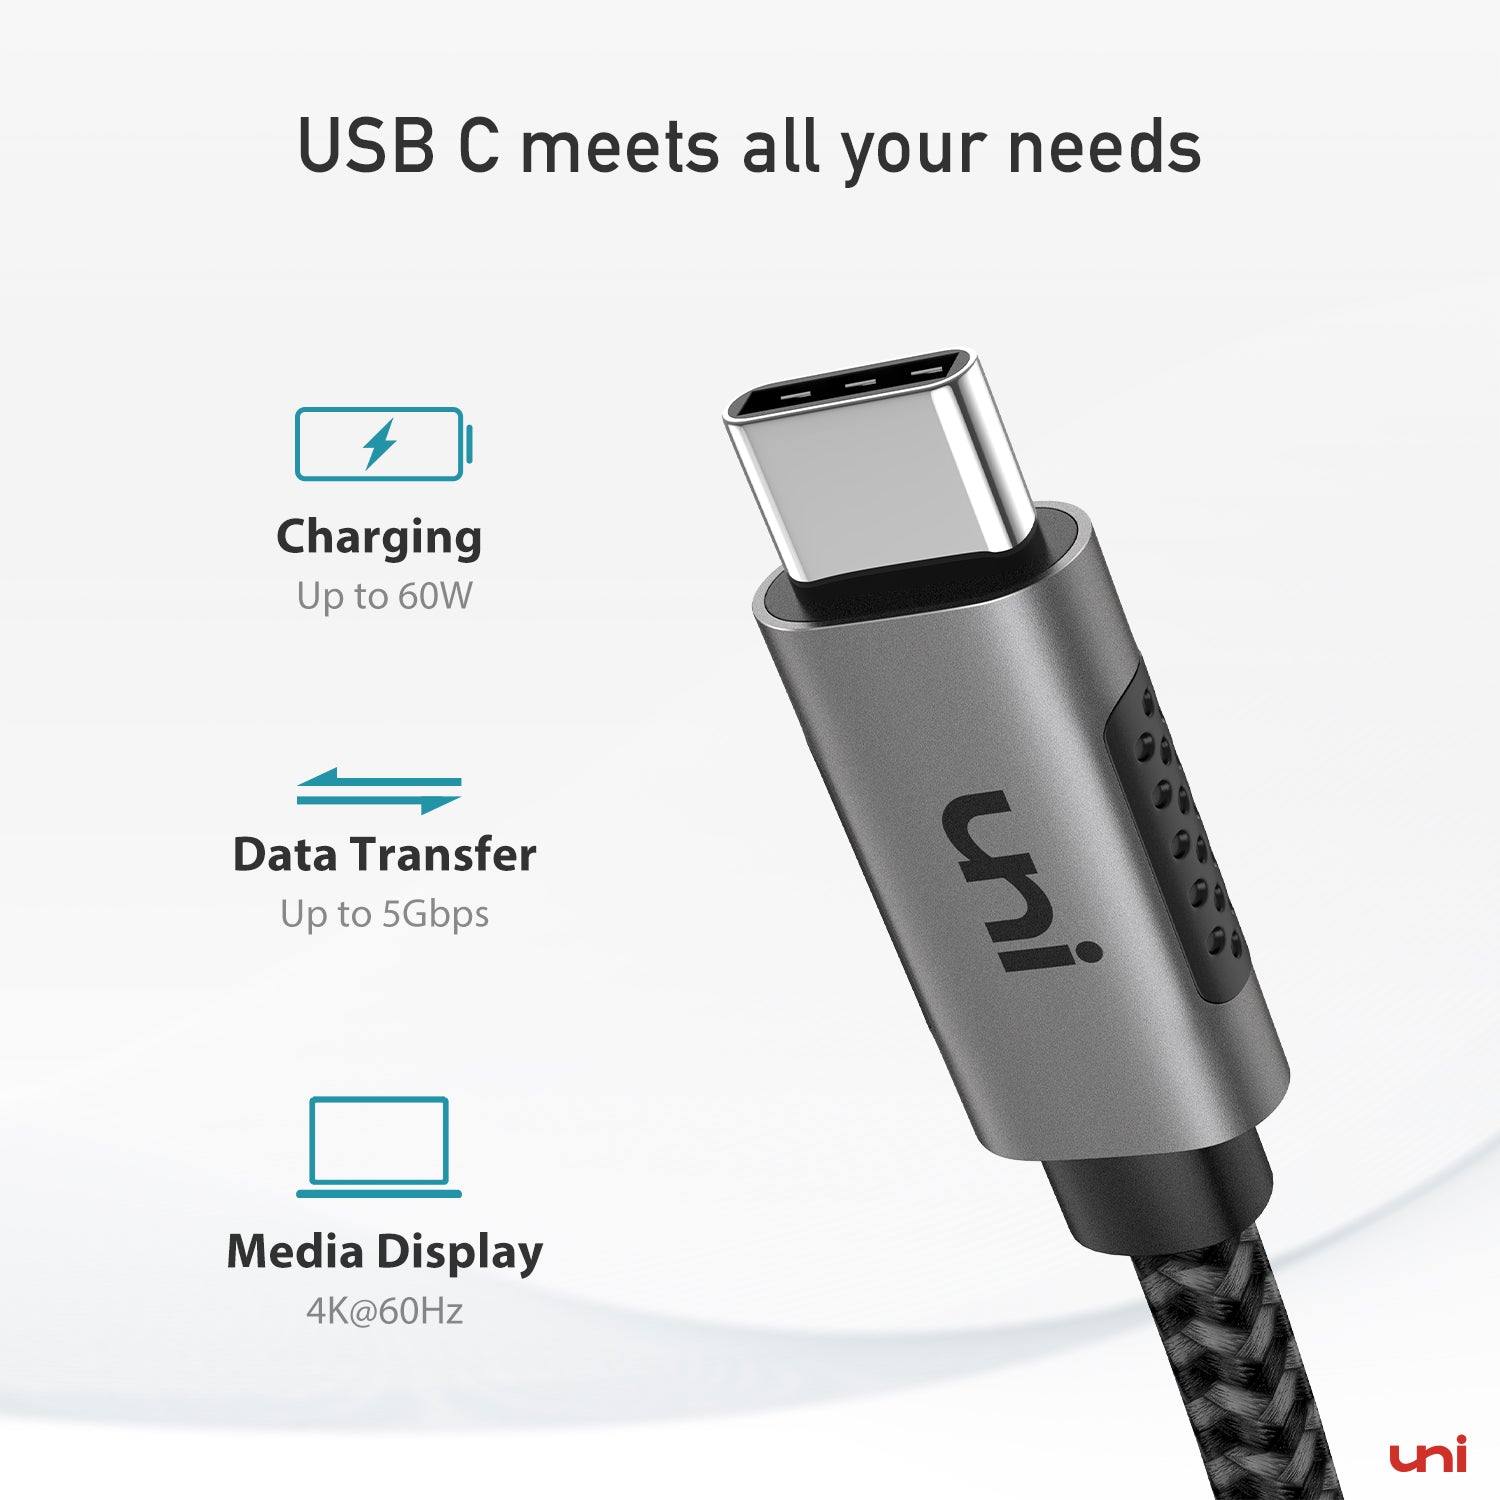 Cargador USB 5V 2,4A + Cable USB tipo C 1m